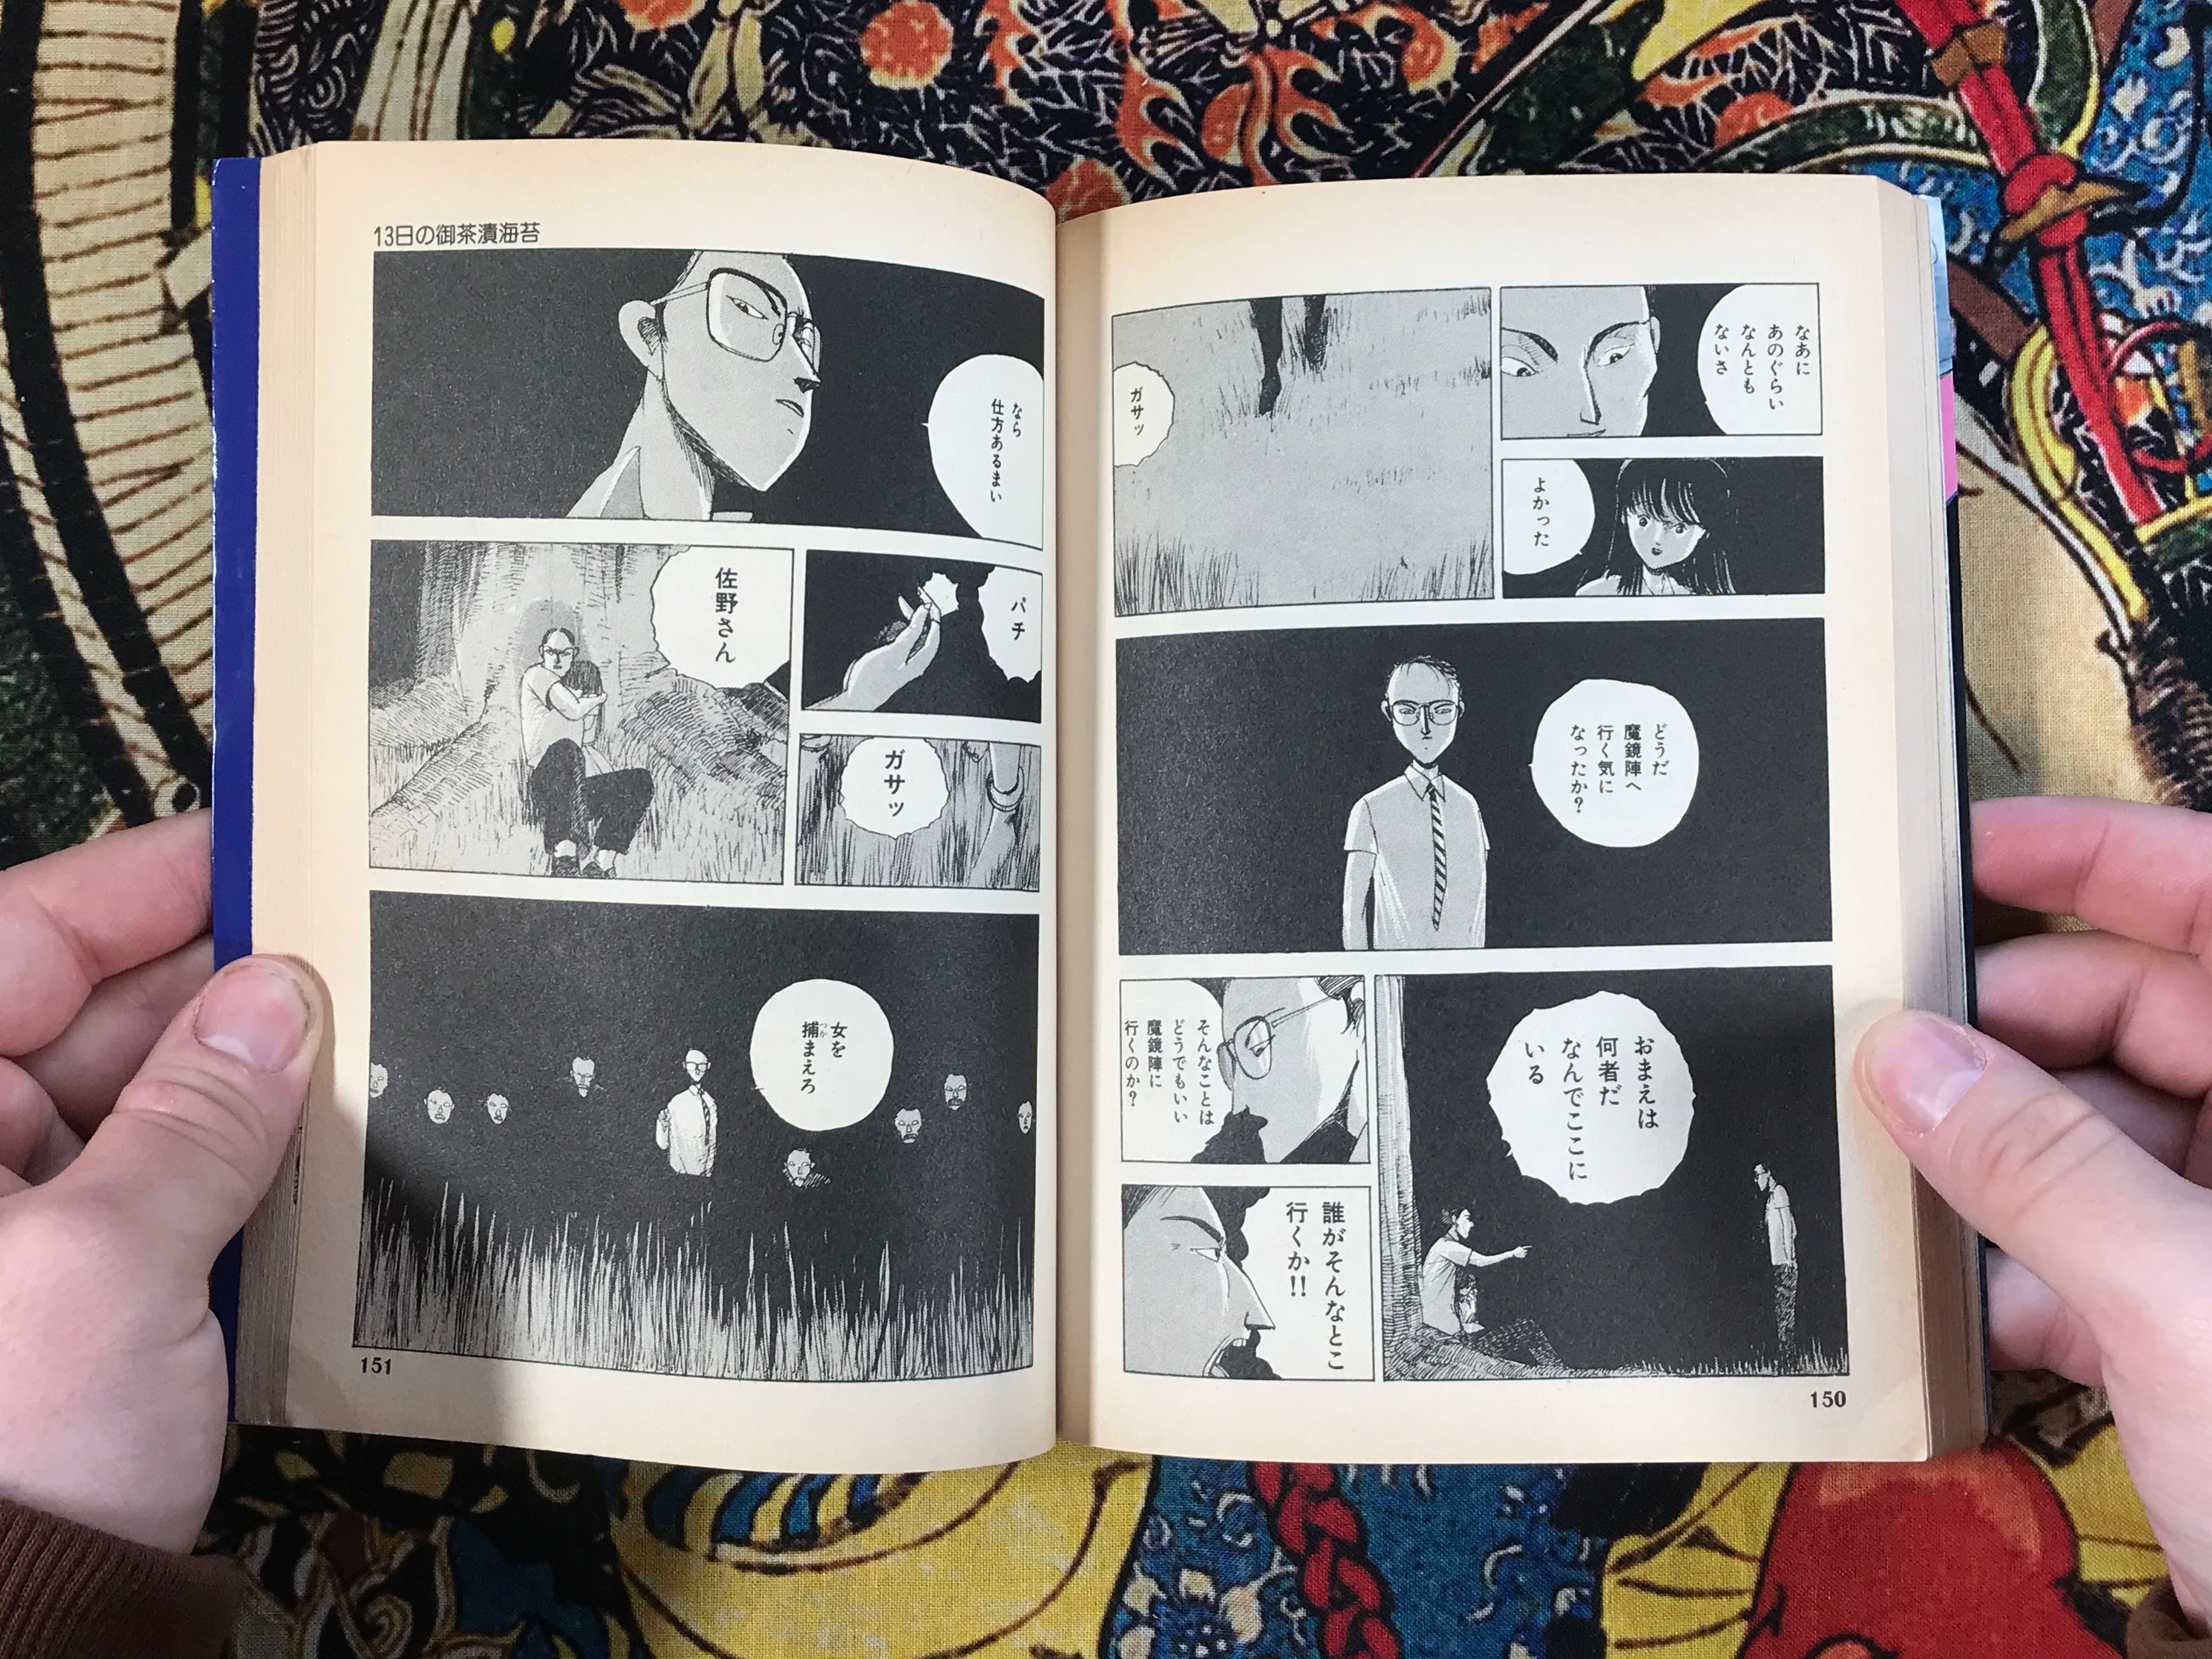 13 Days of Ochazukenori by Ochazukenori (1988)